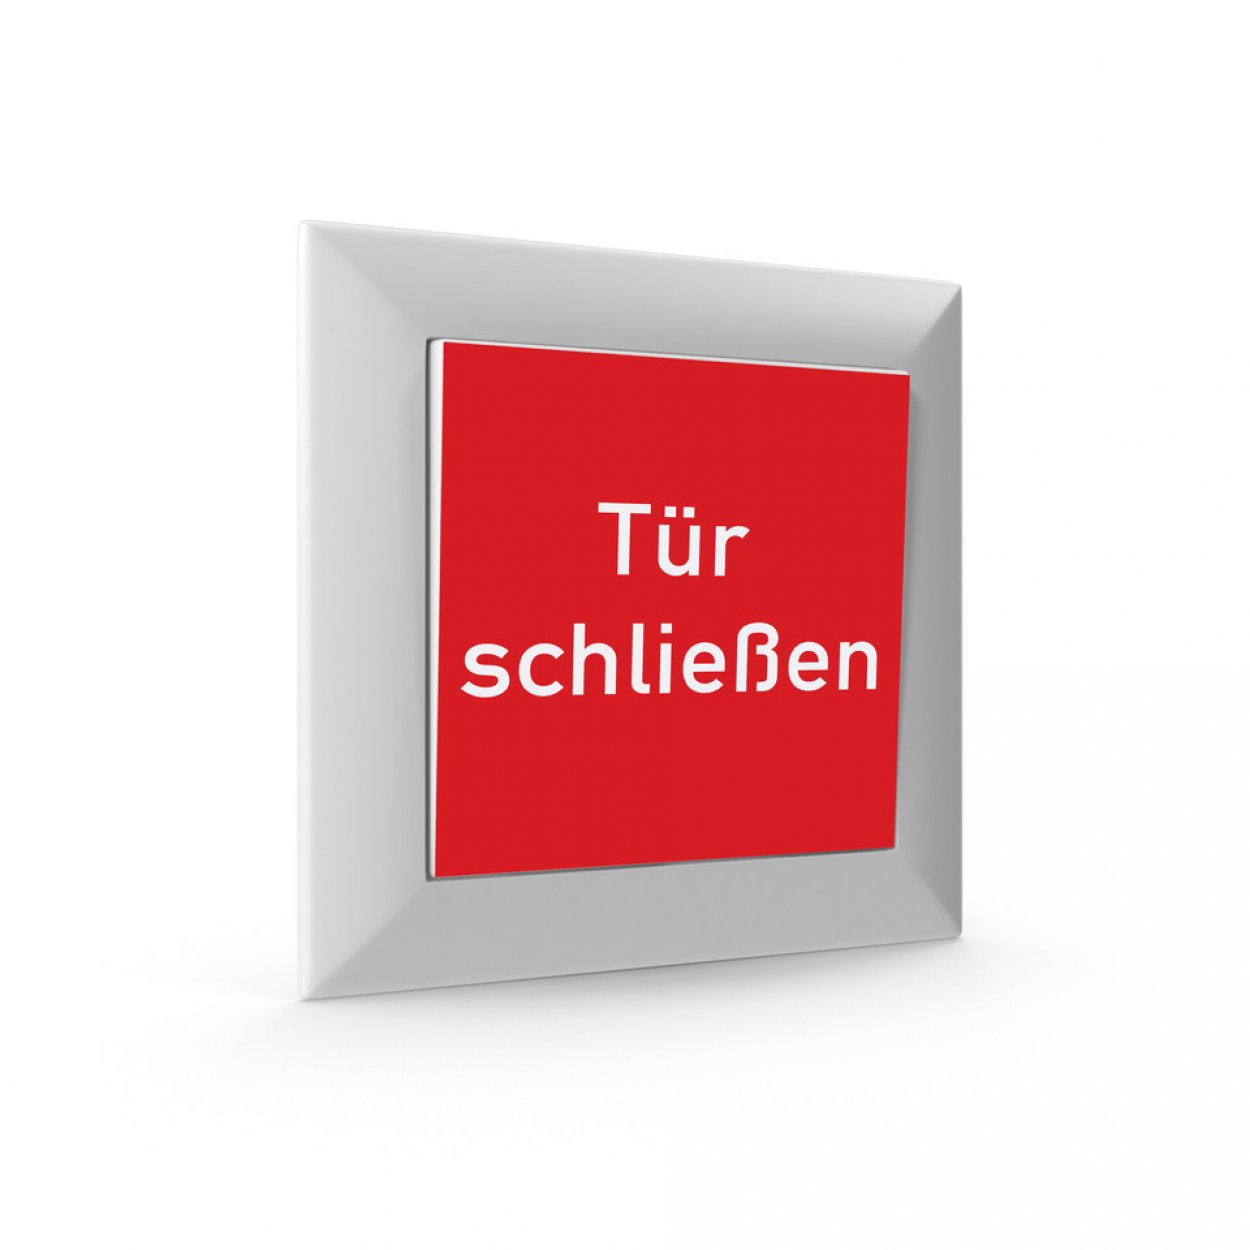 2x Aufkleber für Taster Schalter Brandschutztür Feststellanlage "Tür schließen"